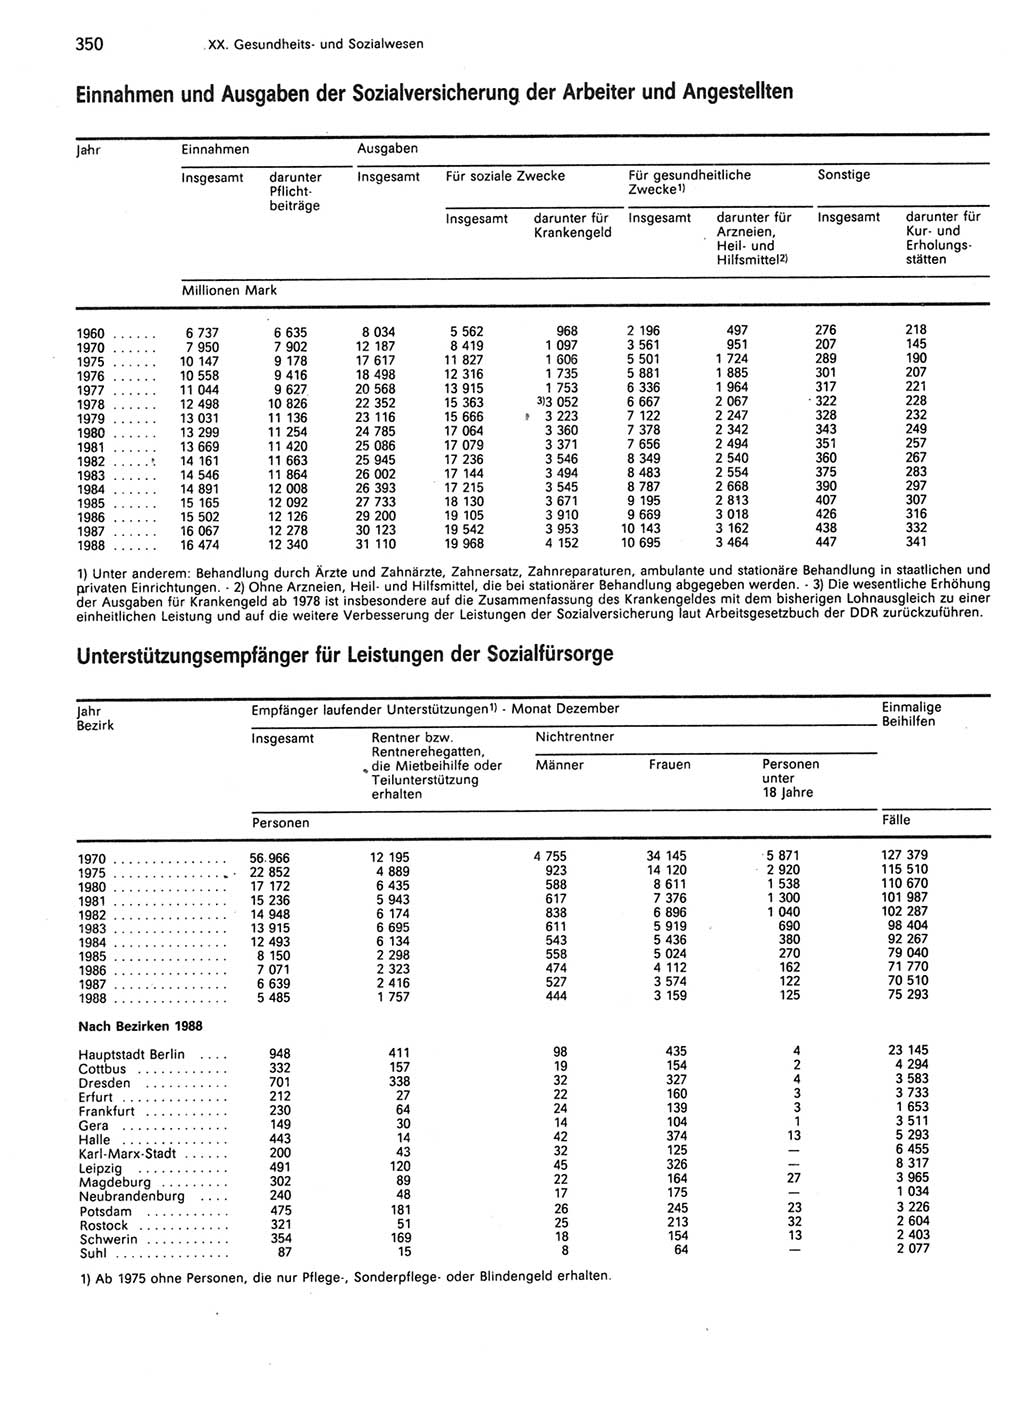 Statistisches Jahrbuch der Deutschen Demokratischen Republik (DDR) 1989, Seite 350 (Stat. Jb. DDR 1989, S. 350)